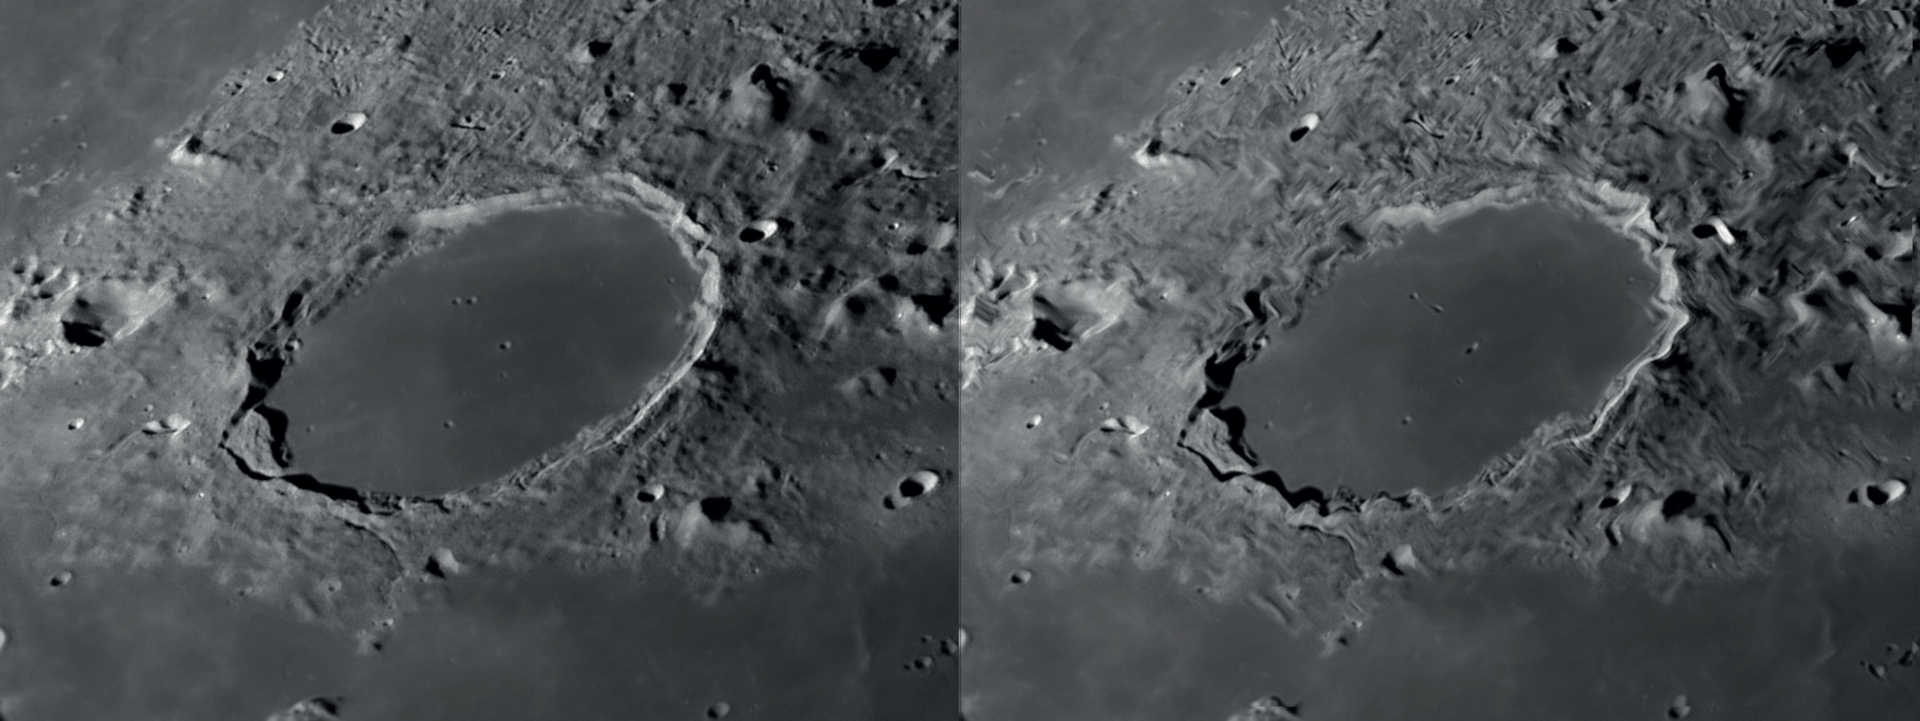 Bei gutem
Seeing ist die Detailerkennung
bei der Mond- und
Planetenbeobachtung
hoch (links).
Langsame Luftbewegungen
führen zu lokaler
Bildverzerrung,
während die anderen
Bildbereiche scharf erhalten
bleiben (rechts). NASA/GSFC/Arizona State University/L. Spix